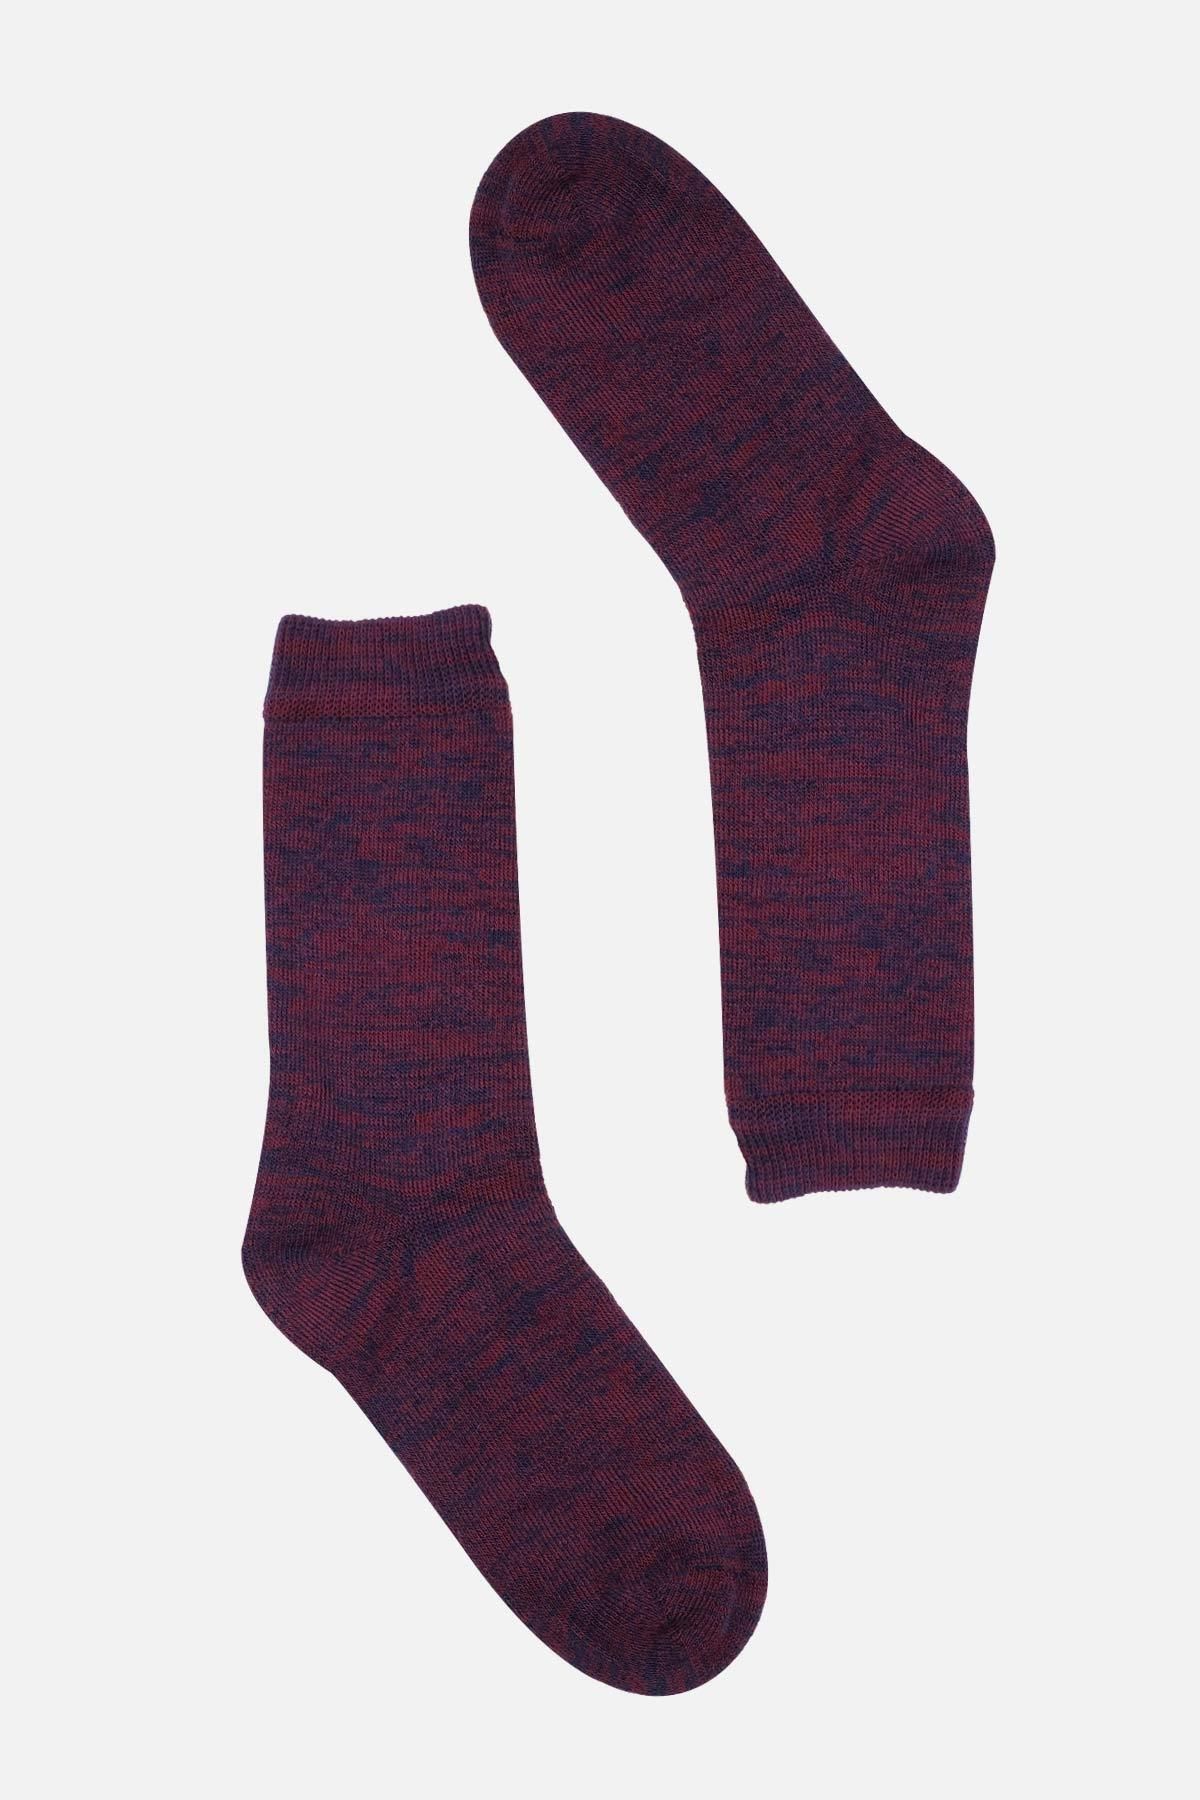 SOCKSMAX Kadın Pamuklu Kışlık Desenli Havlu Çorap Ss 1630 D12